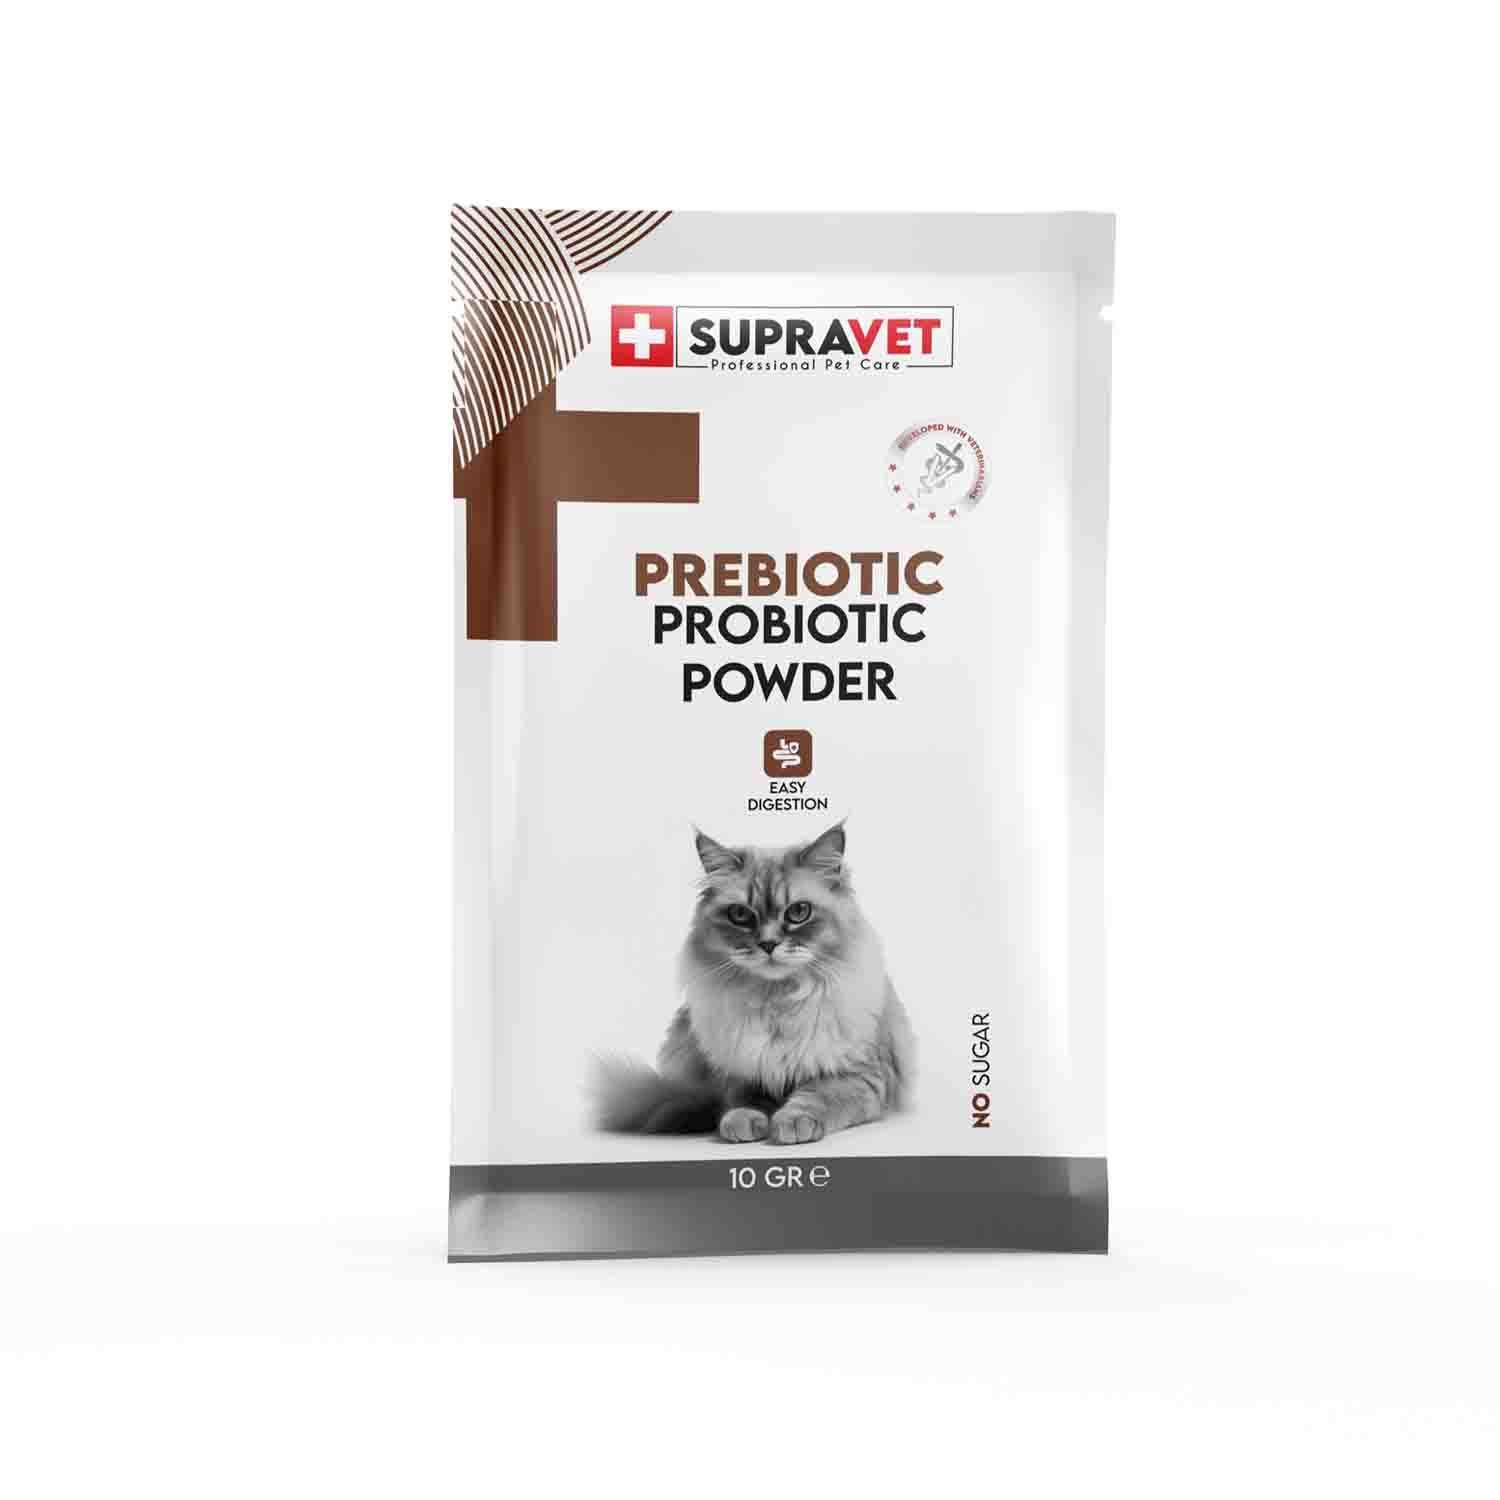 Supravet Kedi Bağışıklık Güçlendirici Toz Probiyotik + Prebiyotik Takviyesi 1,5gr - 1 Adet